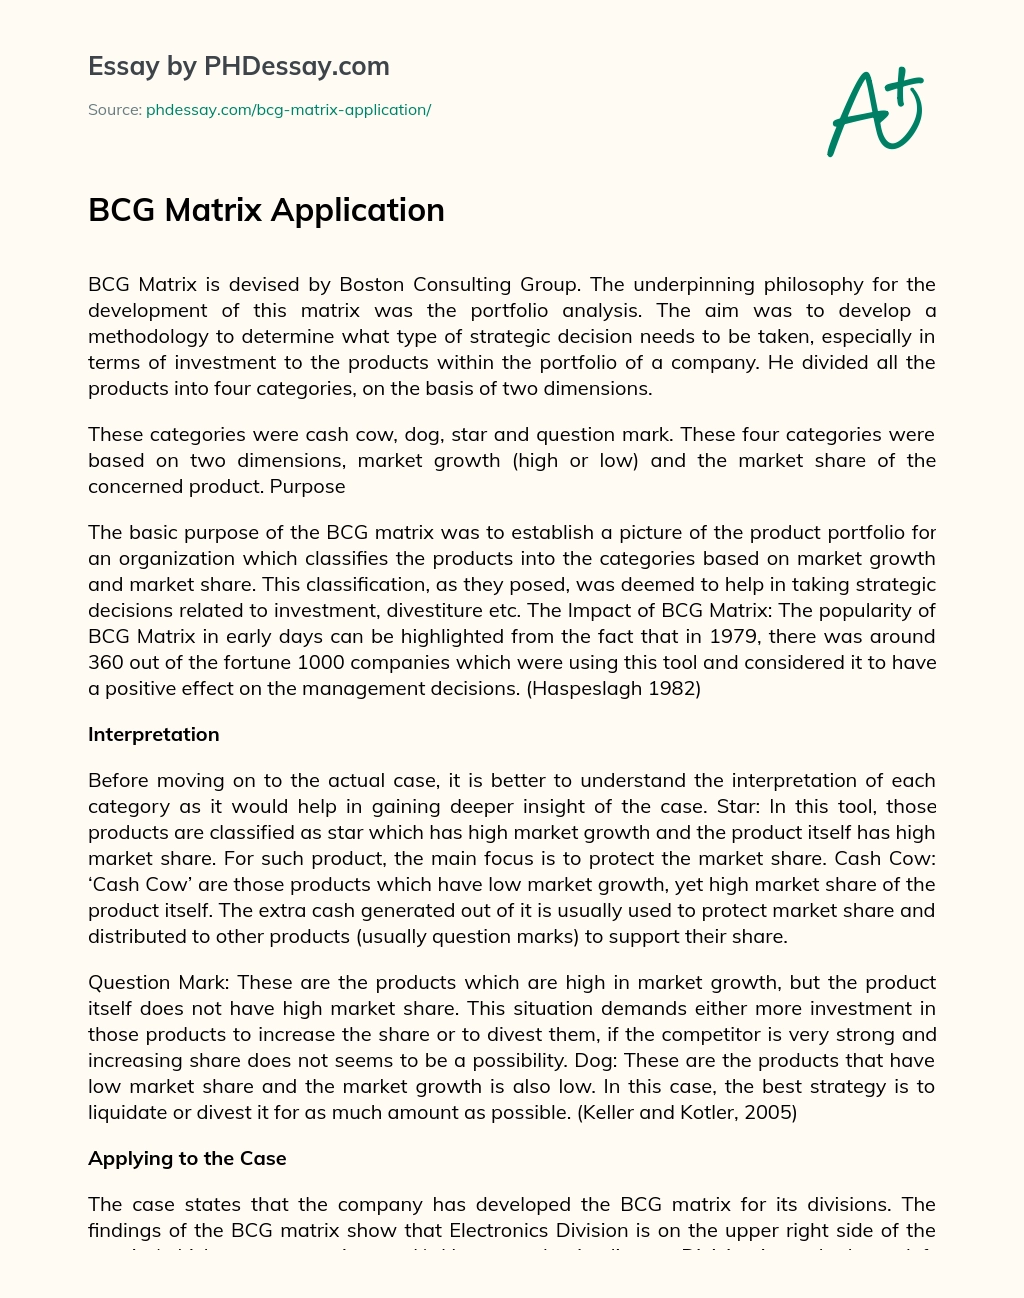 BCG Matrix Application essay